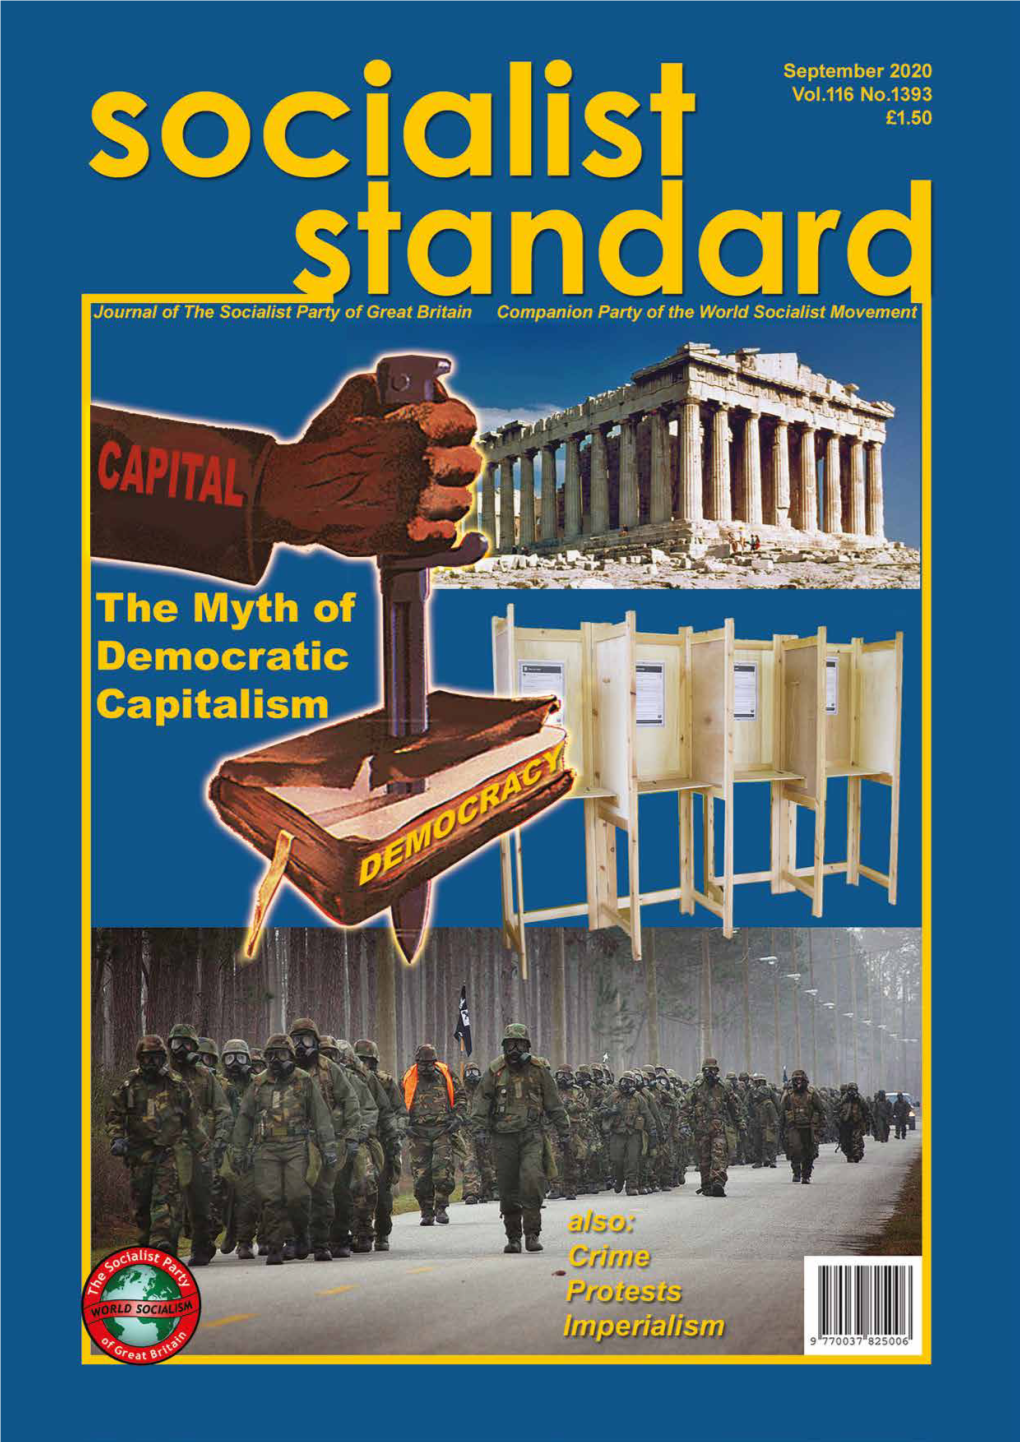 1 Socialist Standard September 2020